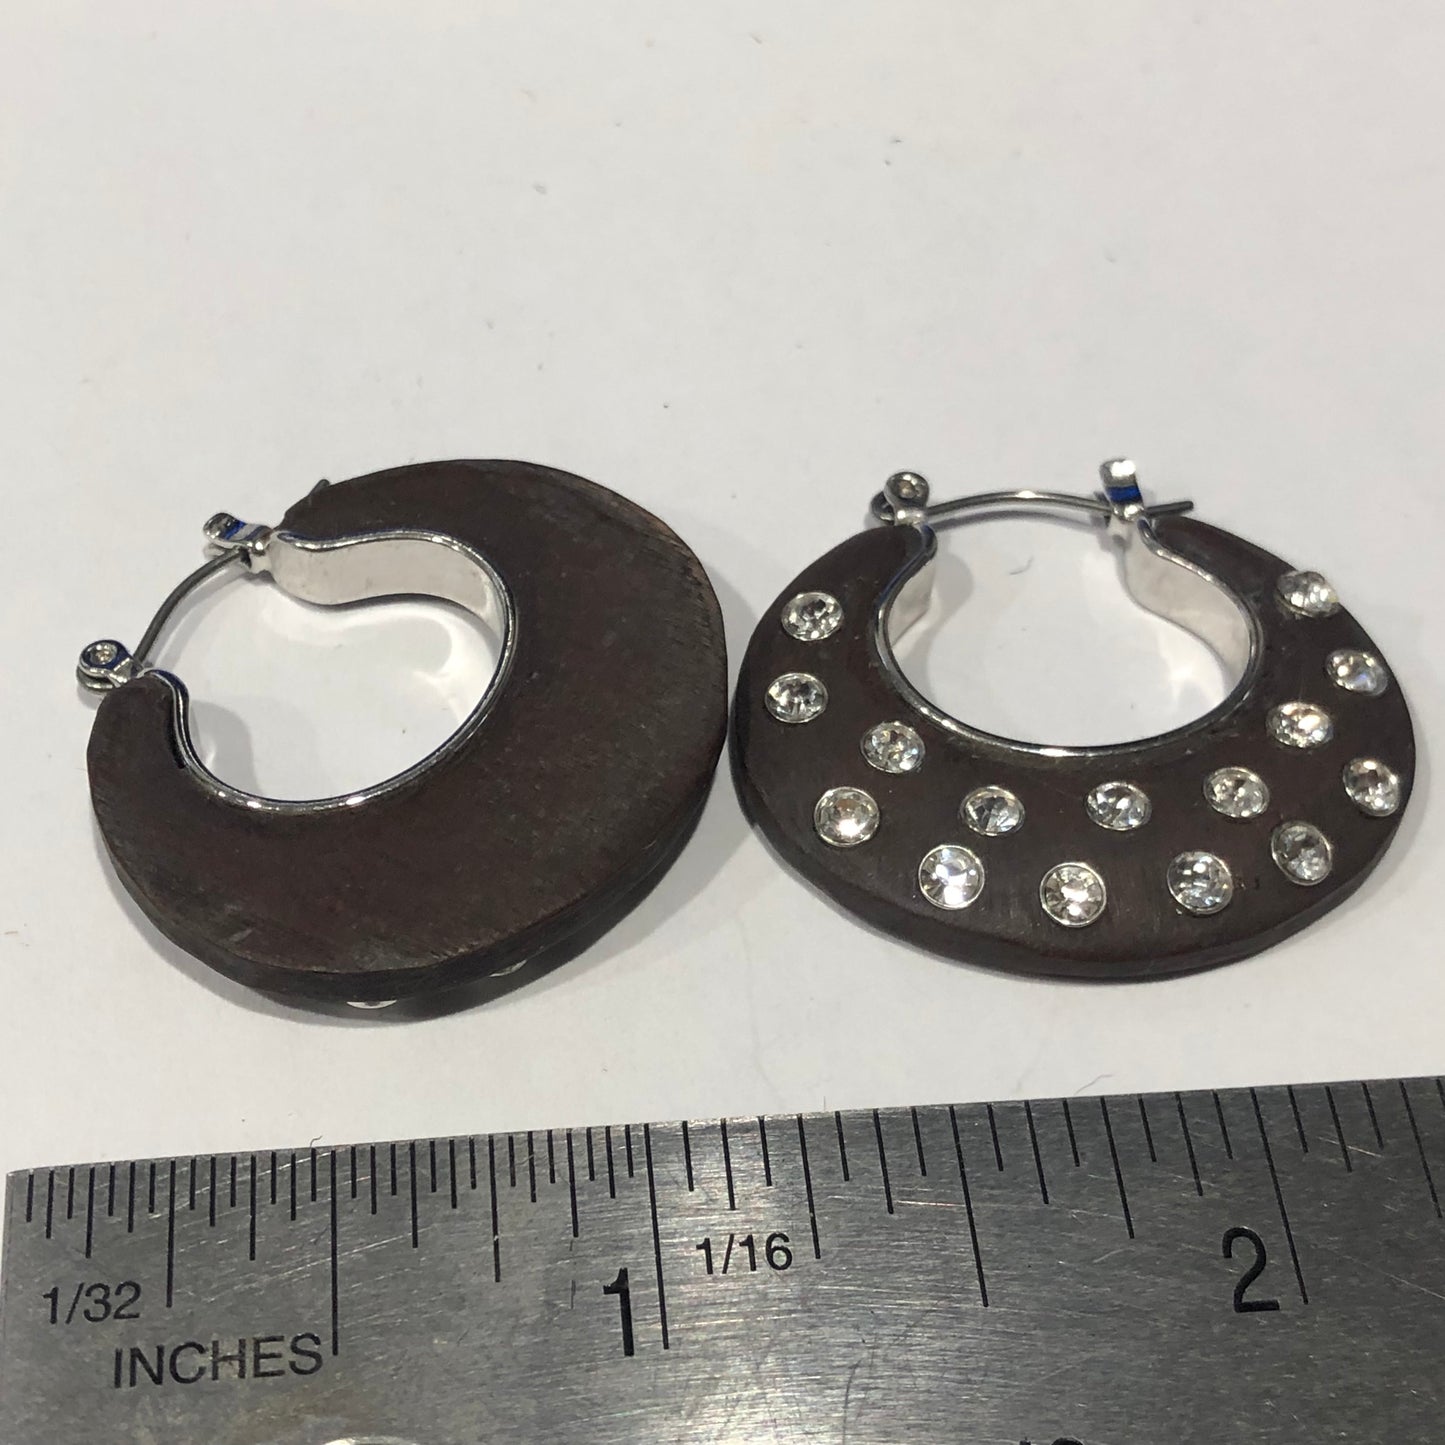 Modern clear glass rhinestone hoop wood Earrings